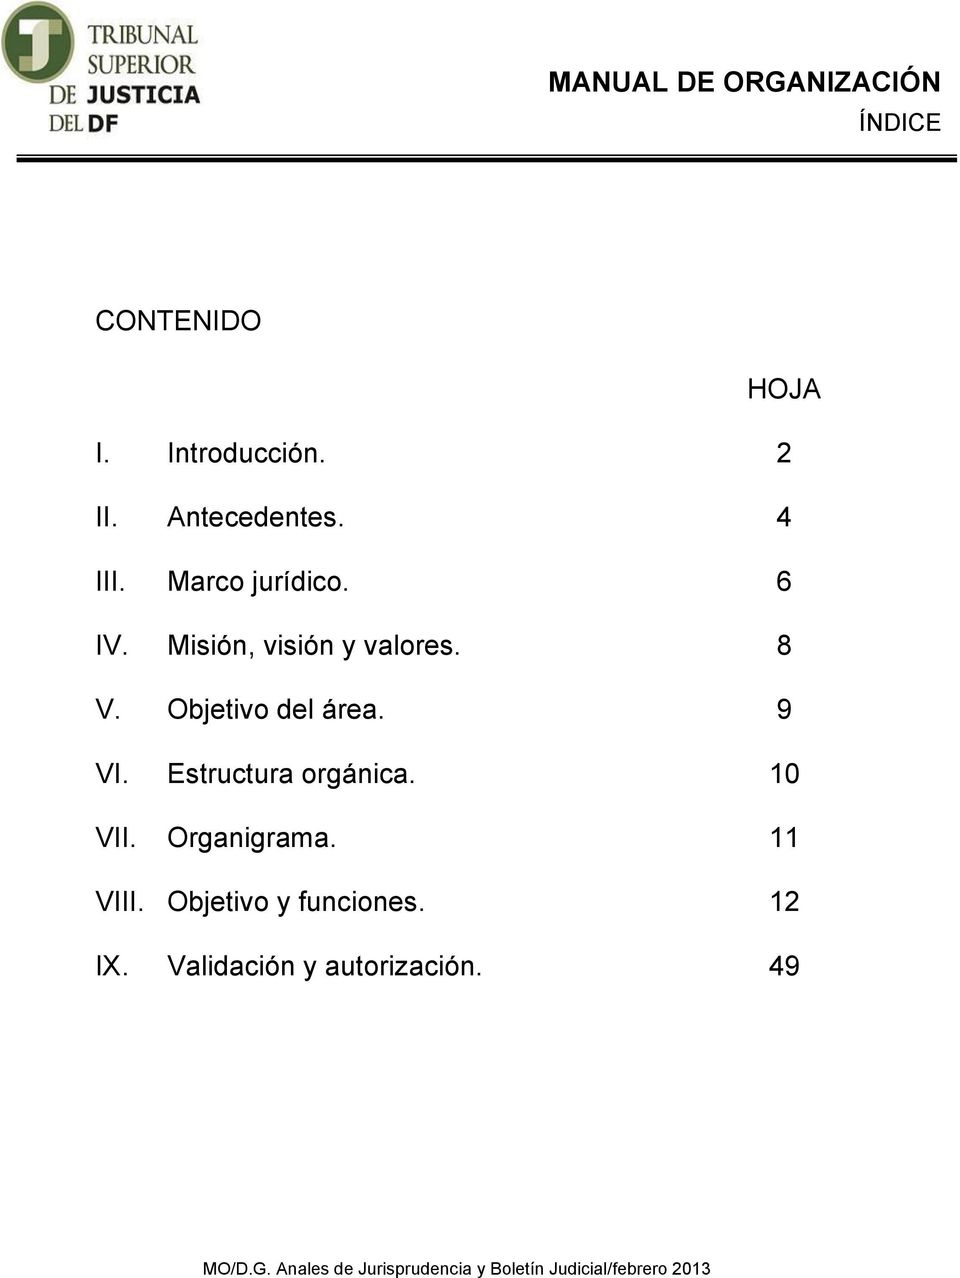 Estructura orgánica. 10 VII. Organigrama. 11 VIII. Objetivo y funciones. 12 IX.